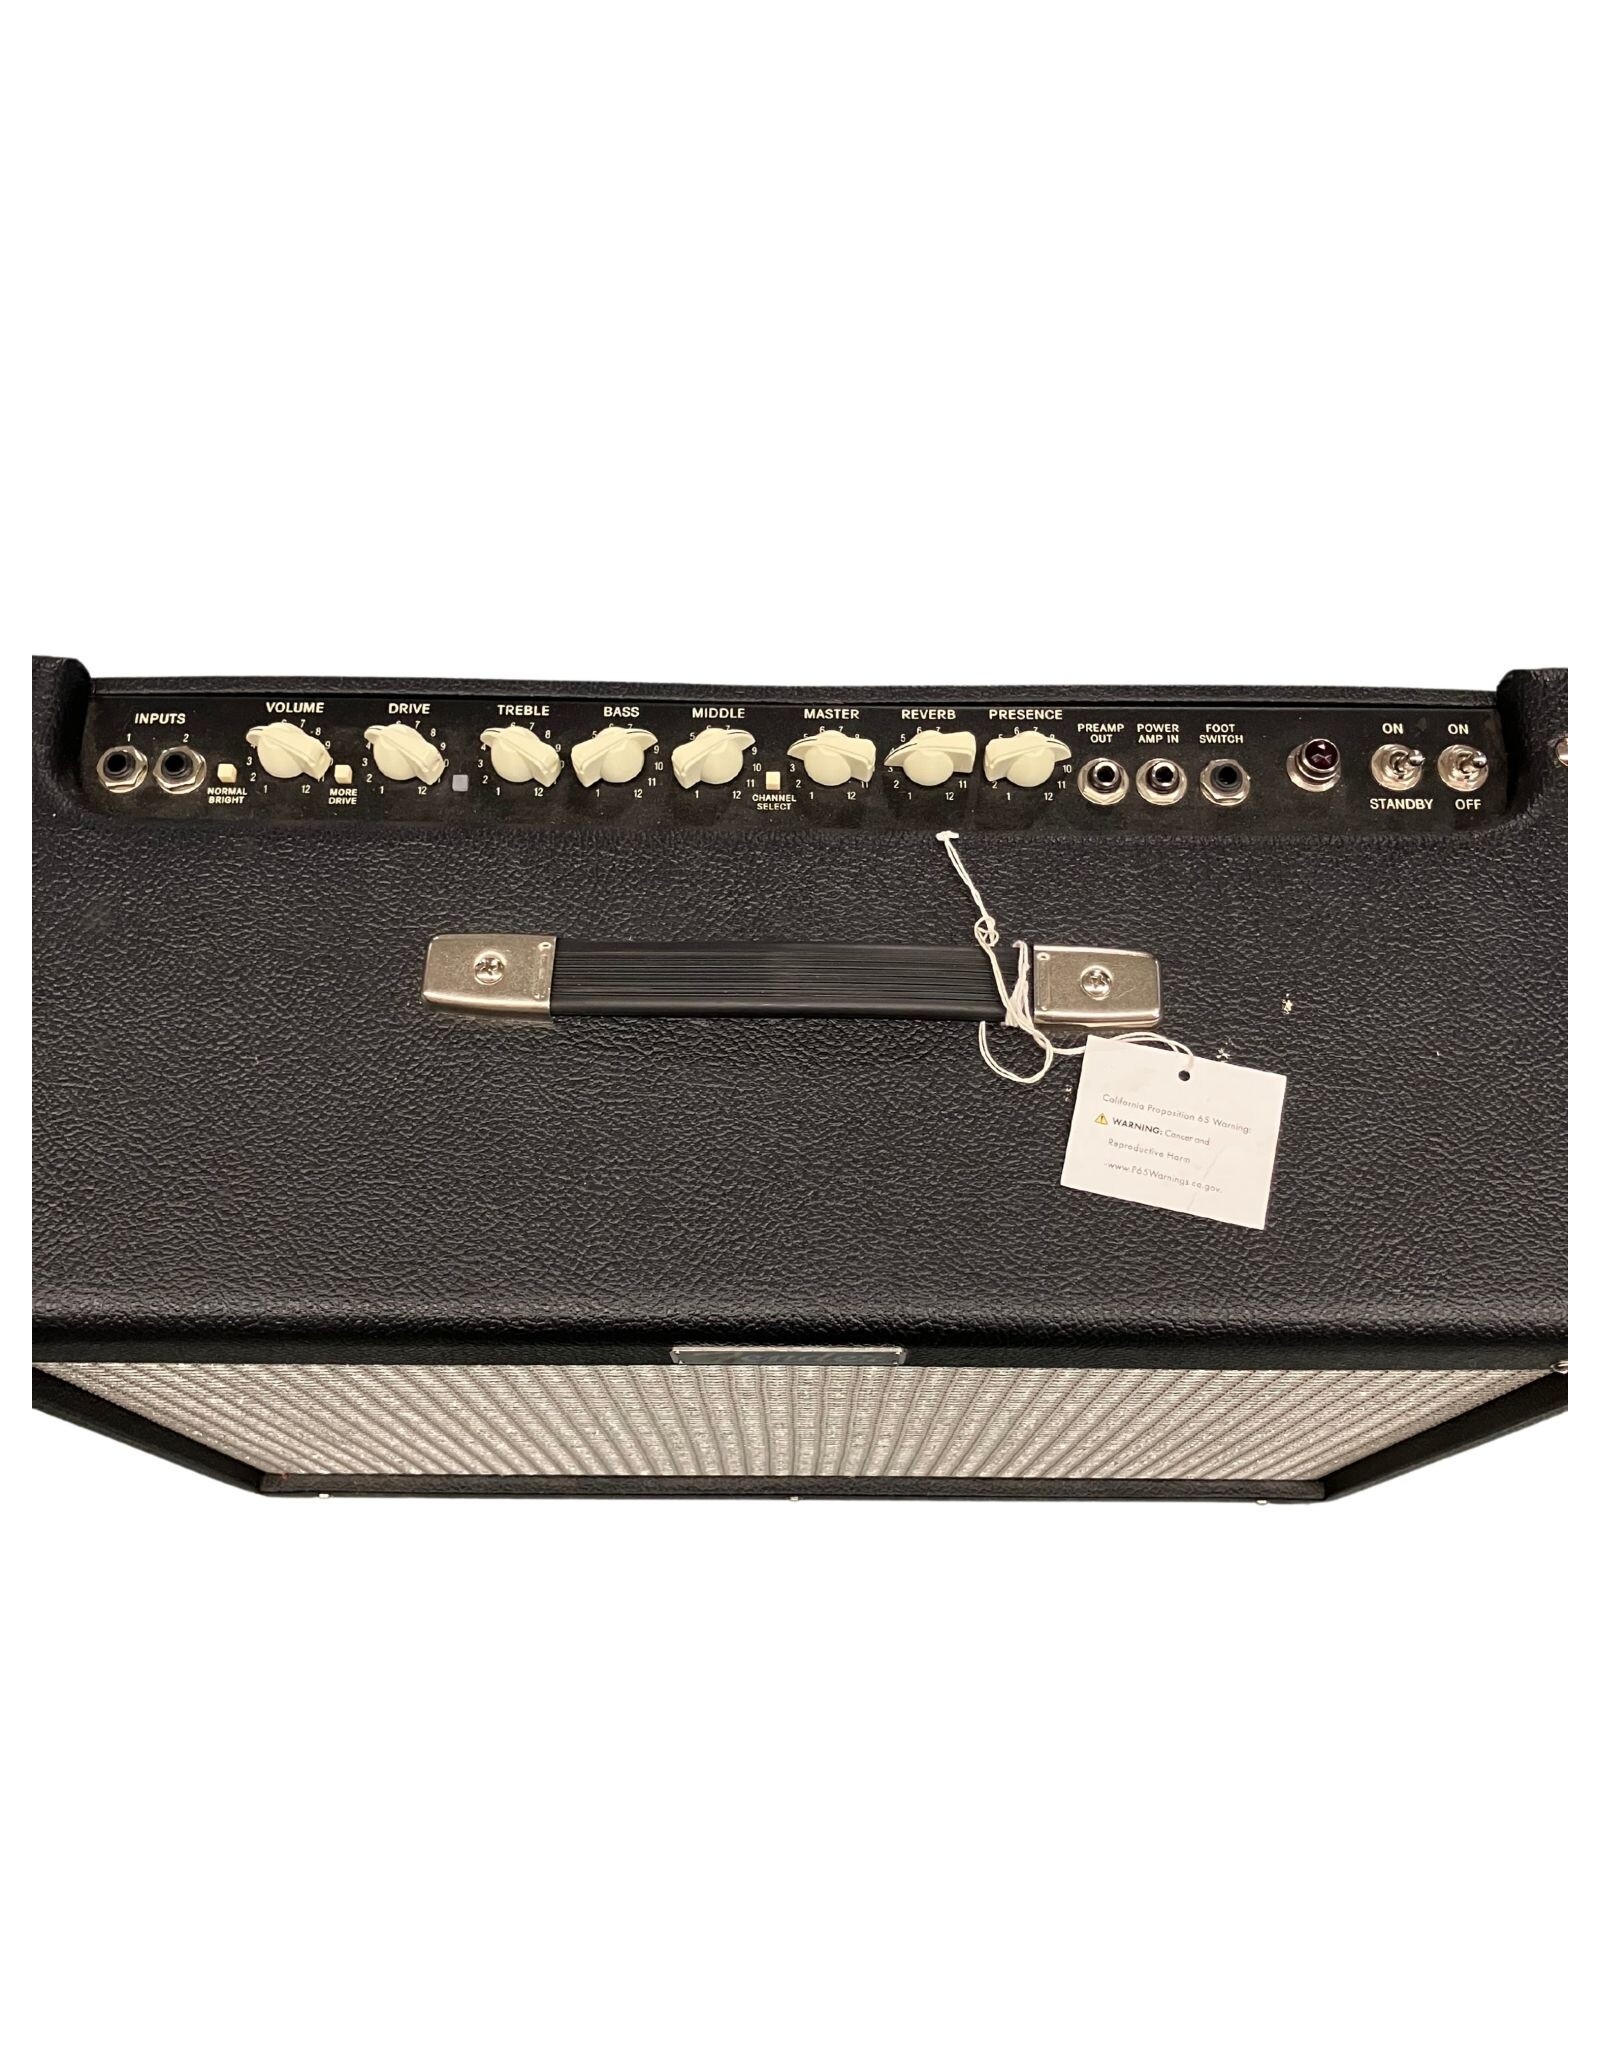 Fender Fender Hot Rod Deluxe IV 1x12" 40-watt Tube Combo Amp (Used)